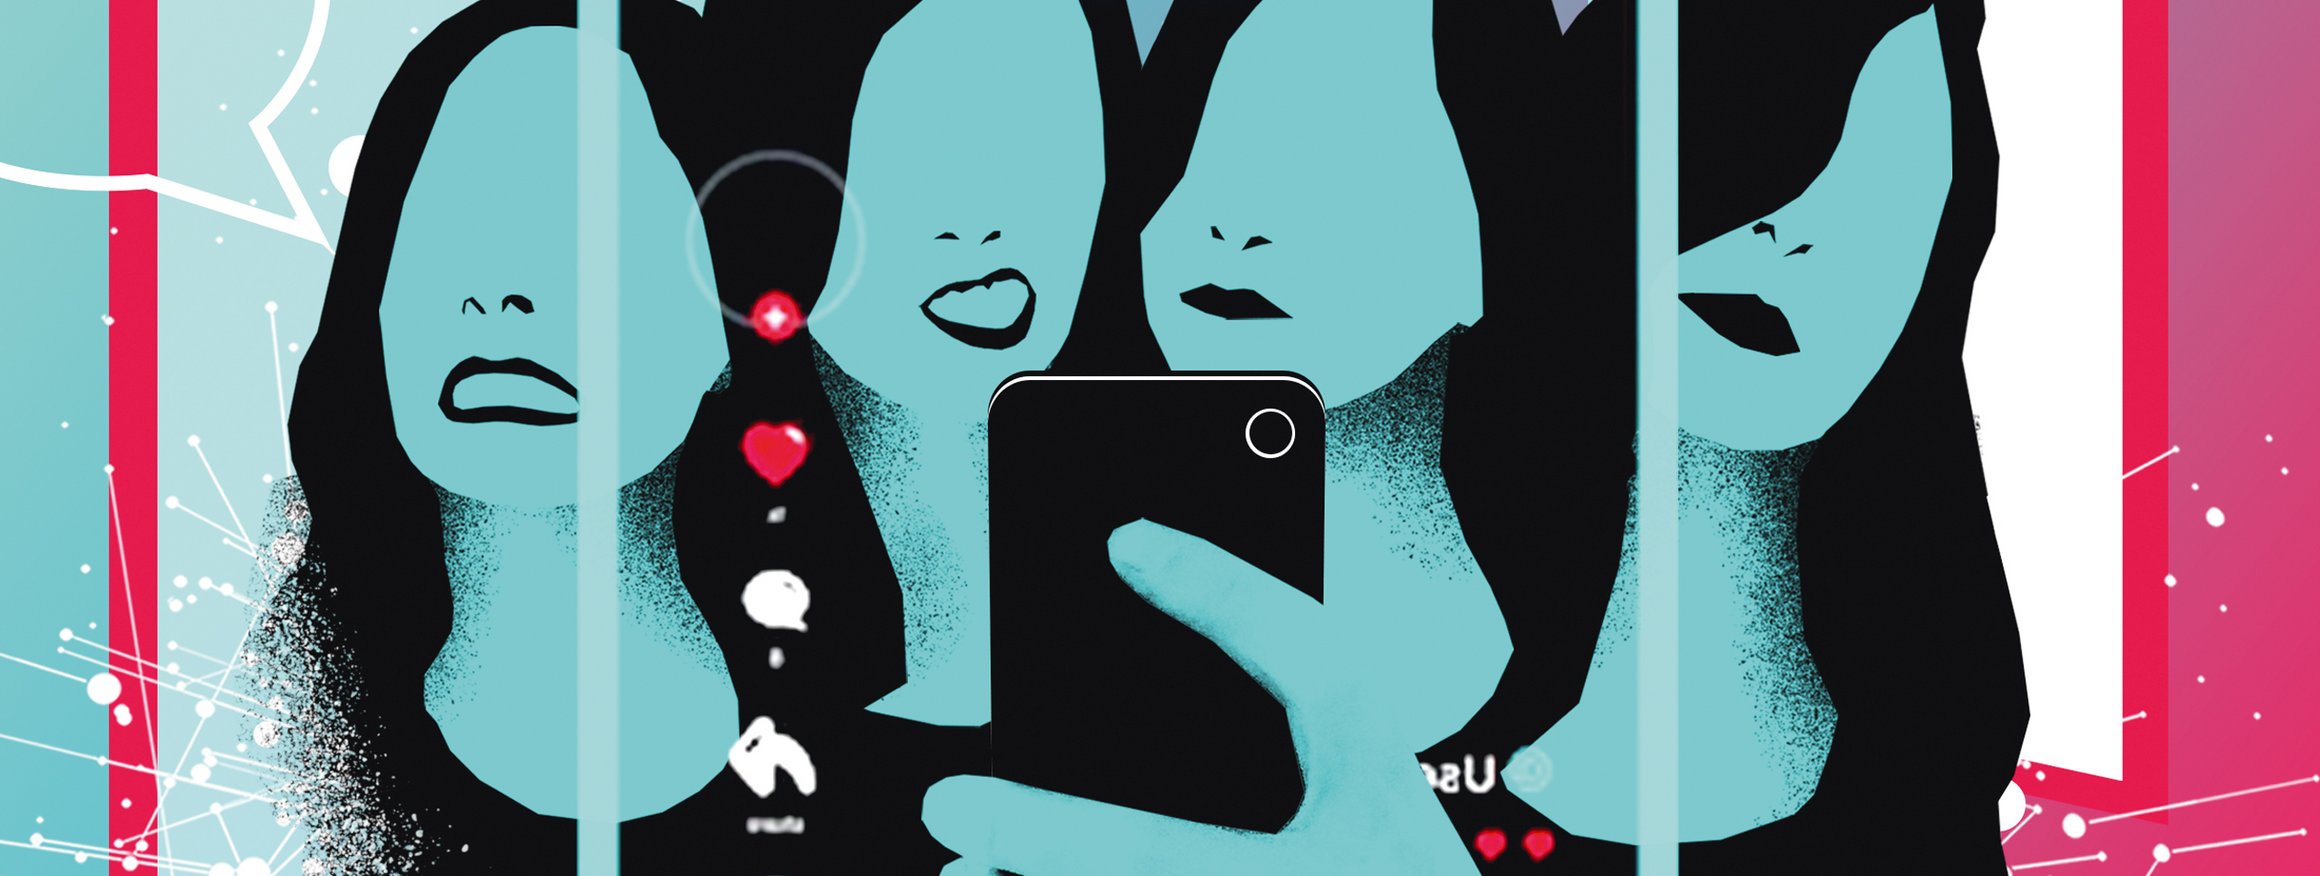 Die Illustration zeigt vierfach eine Jugendliche, die sich mit Grimassen mit ihrem Smartphone für TicTok aufnimmt